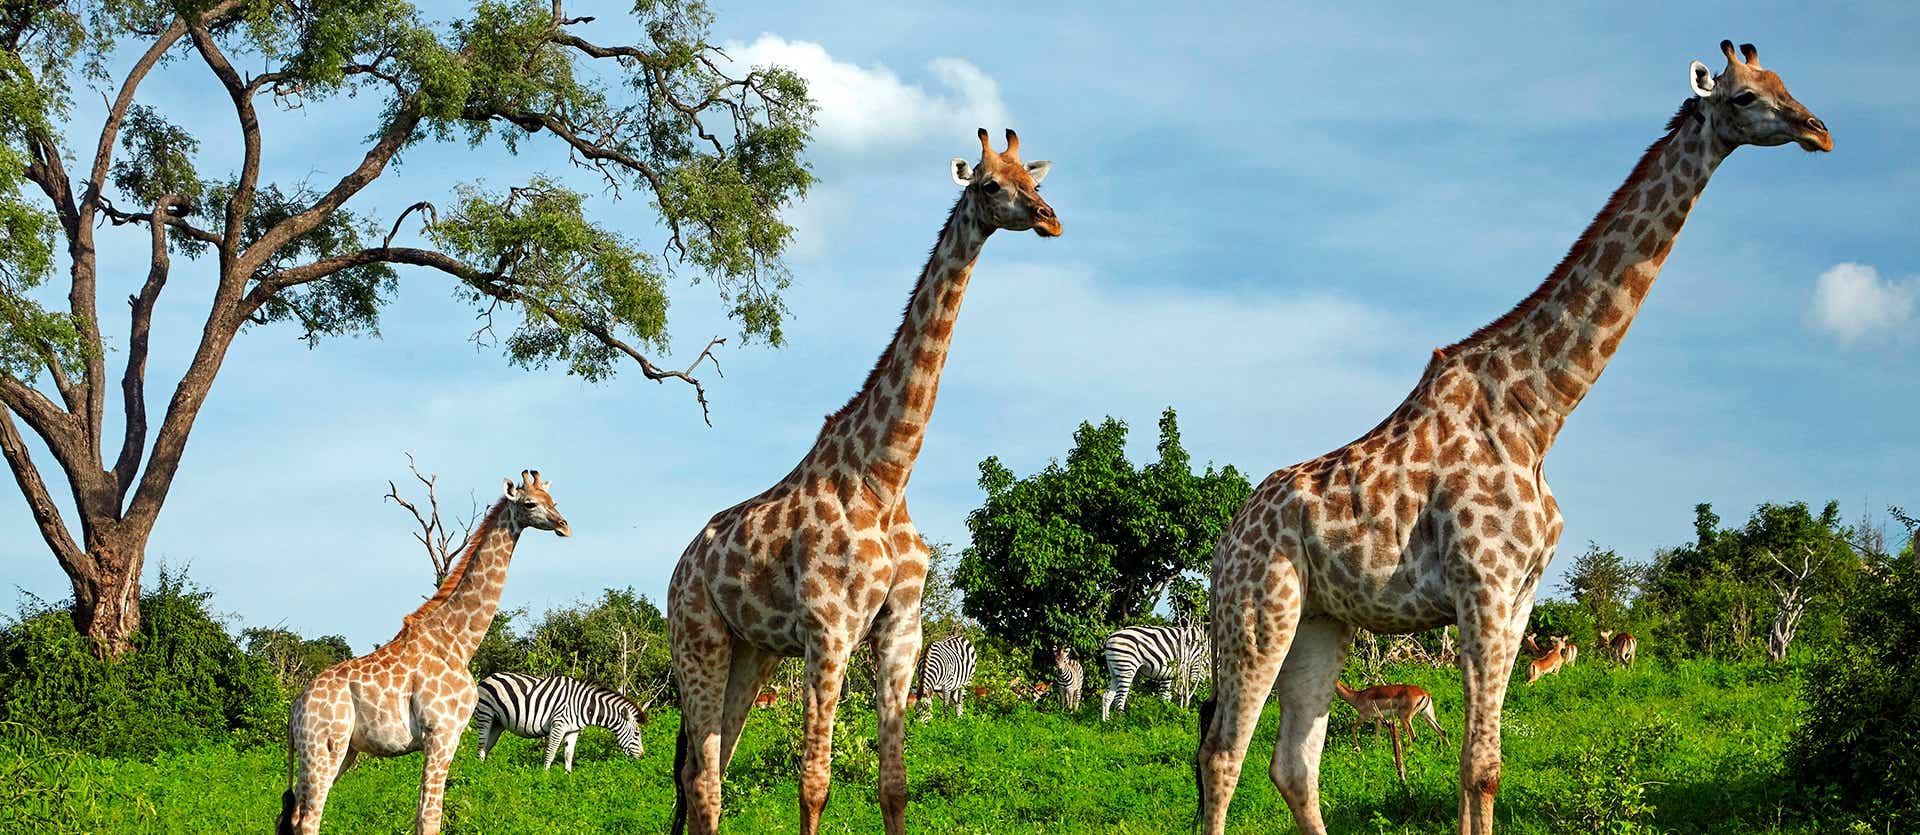 Giraffes <span class="iconos separador"></span> Chobe National Park <span class="iconos separador"></span> Bostwana 